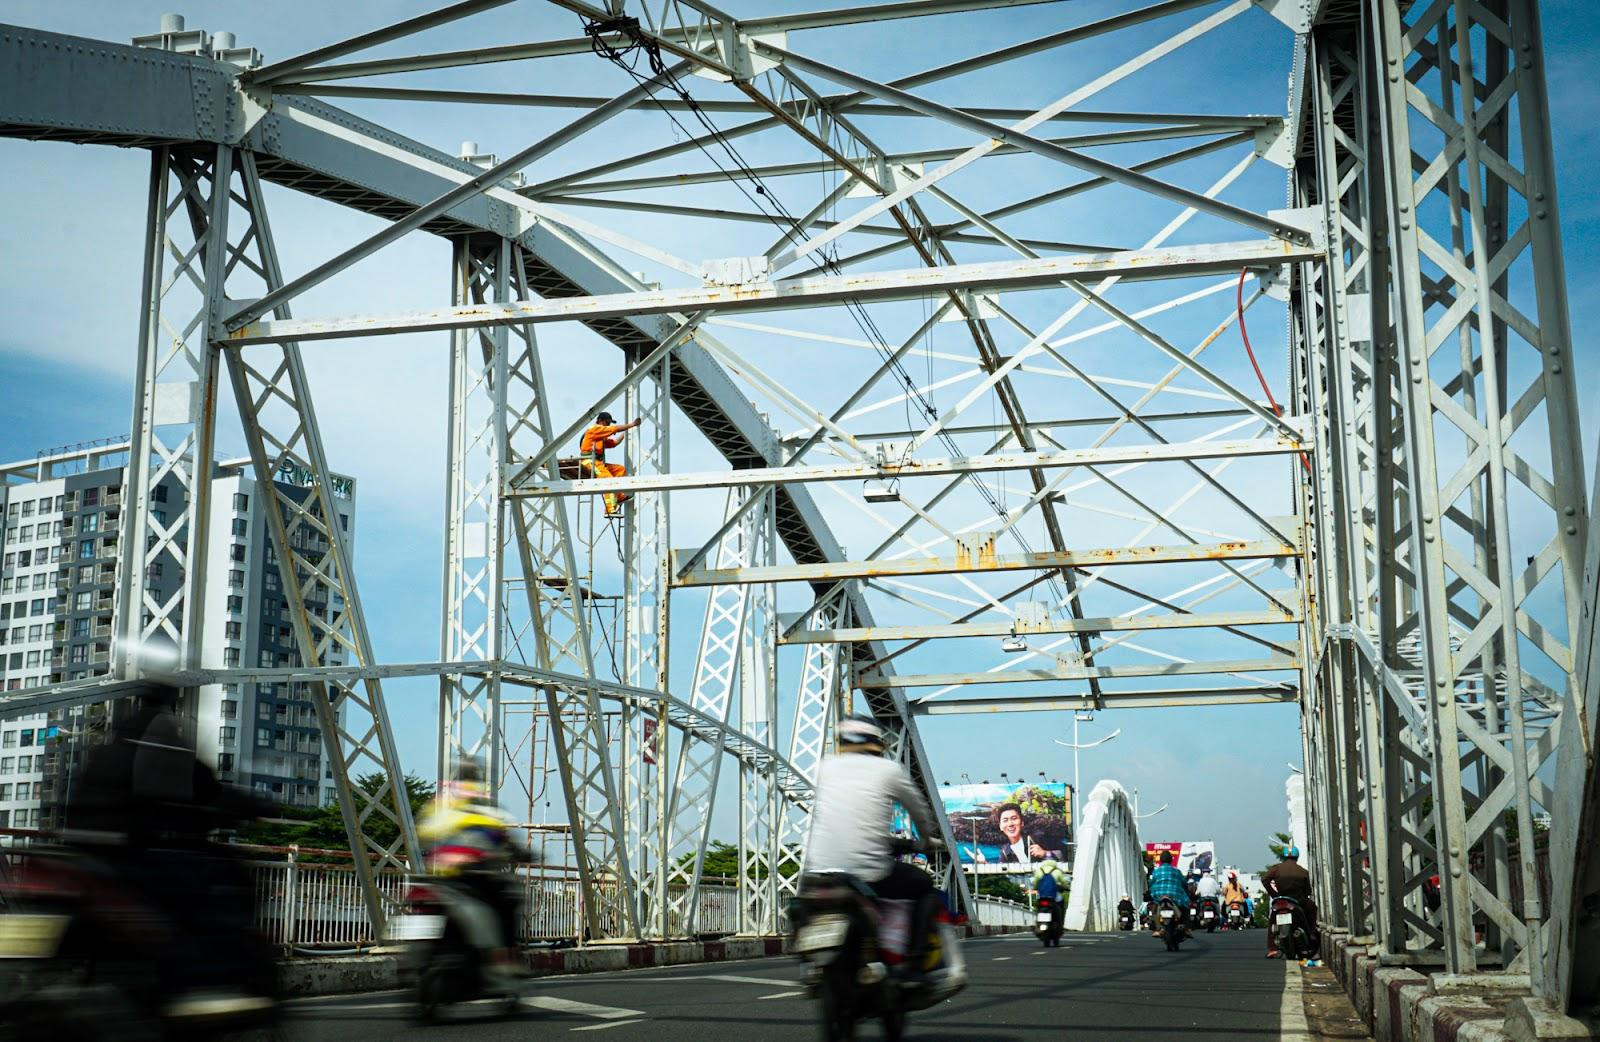 ‏Quận nhỏ nhất Việt Nam: Là một hòn đảo, có 8 cây cầu vượt sông - Ảnh 10.